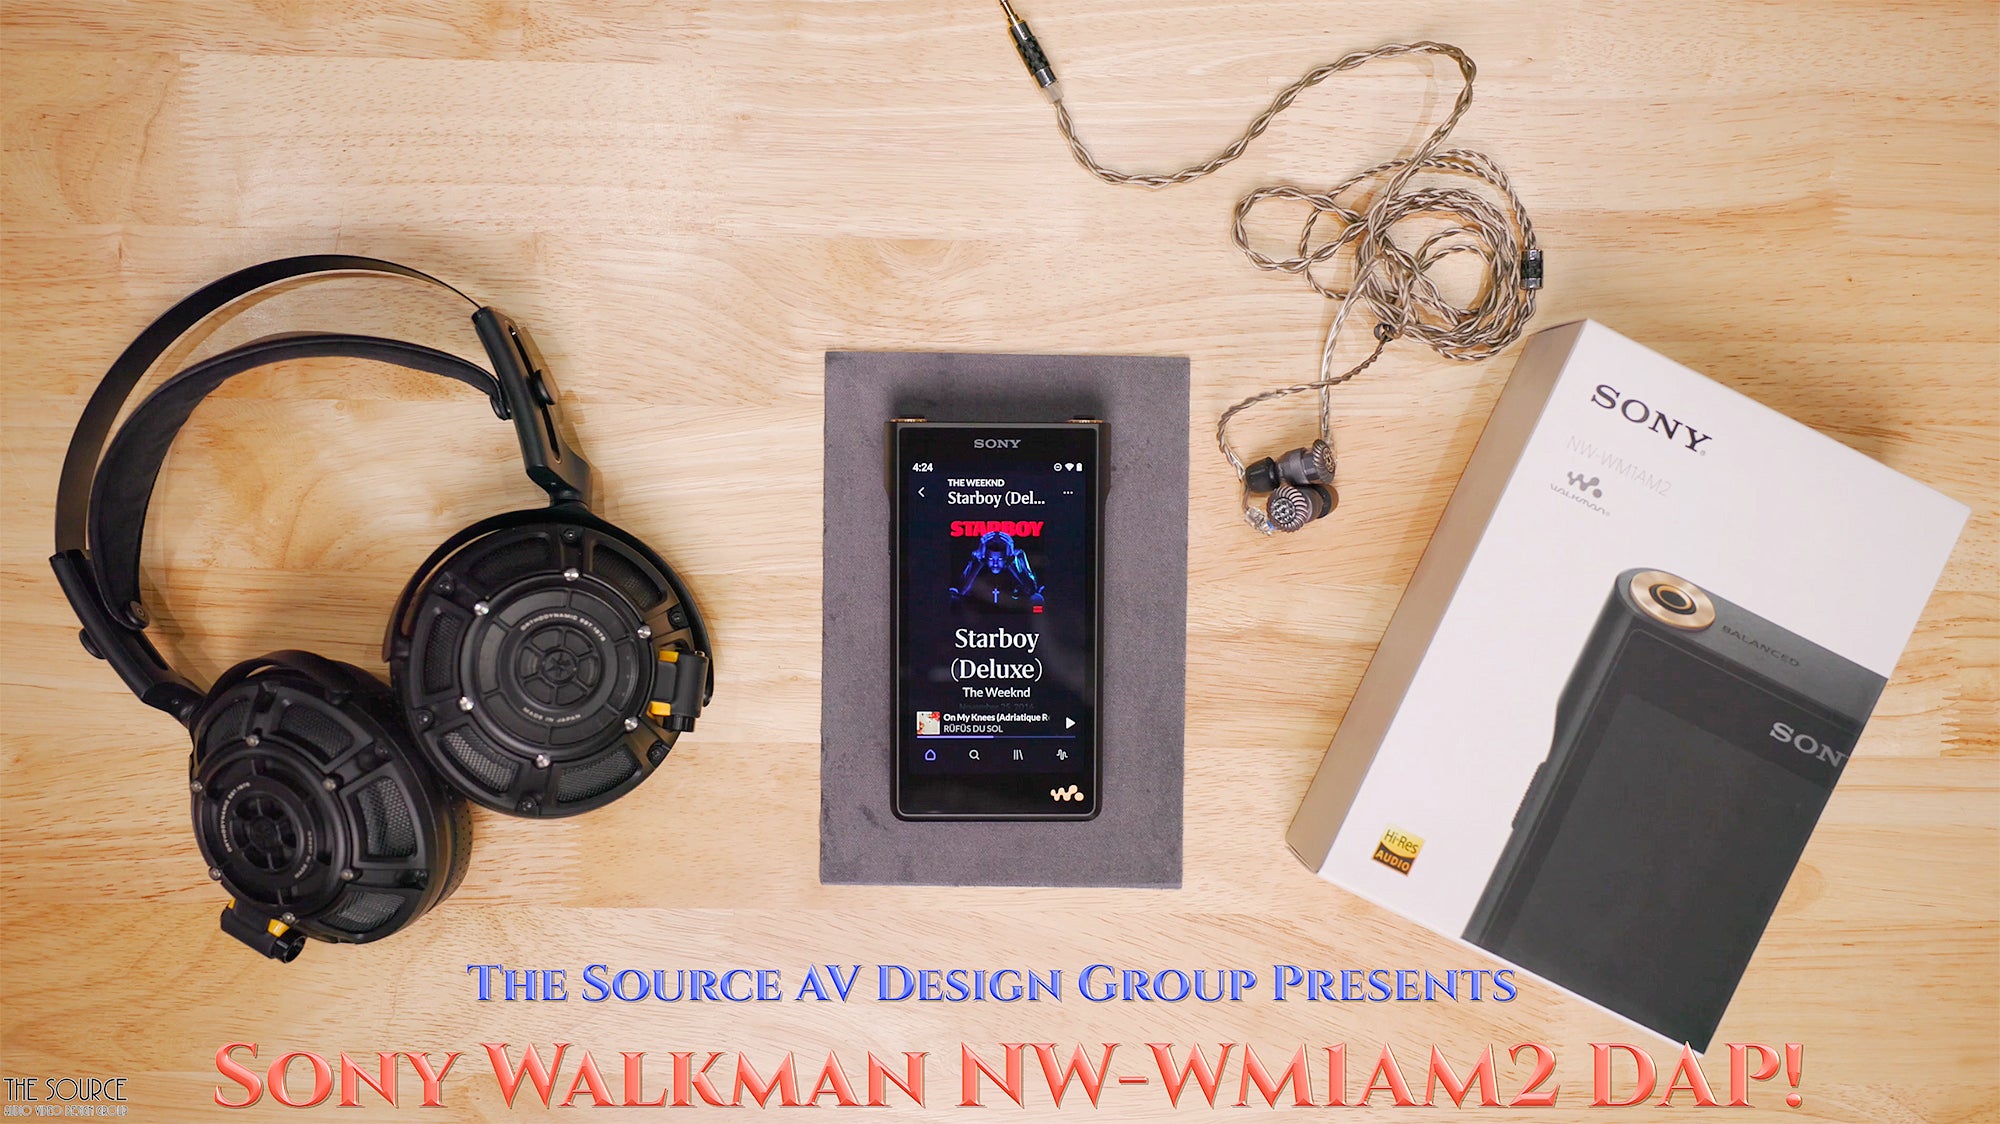 The legendary Sony Walkman NW-WM1AM2 HiFi Digital Audio Player!